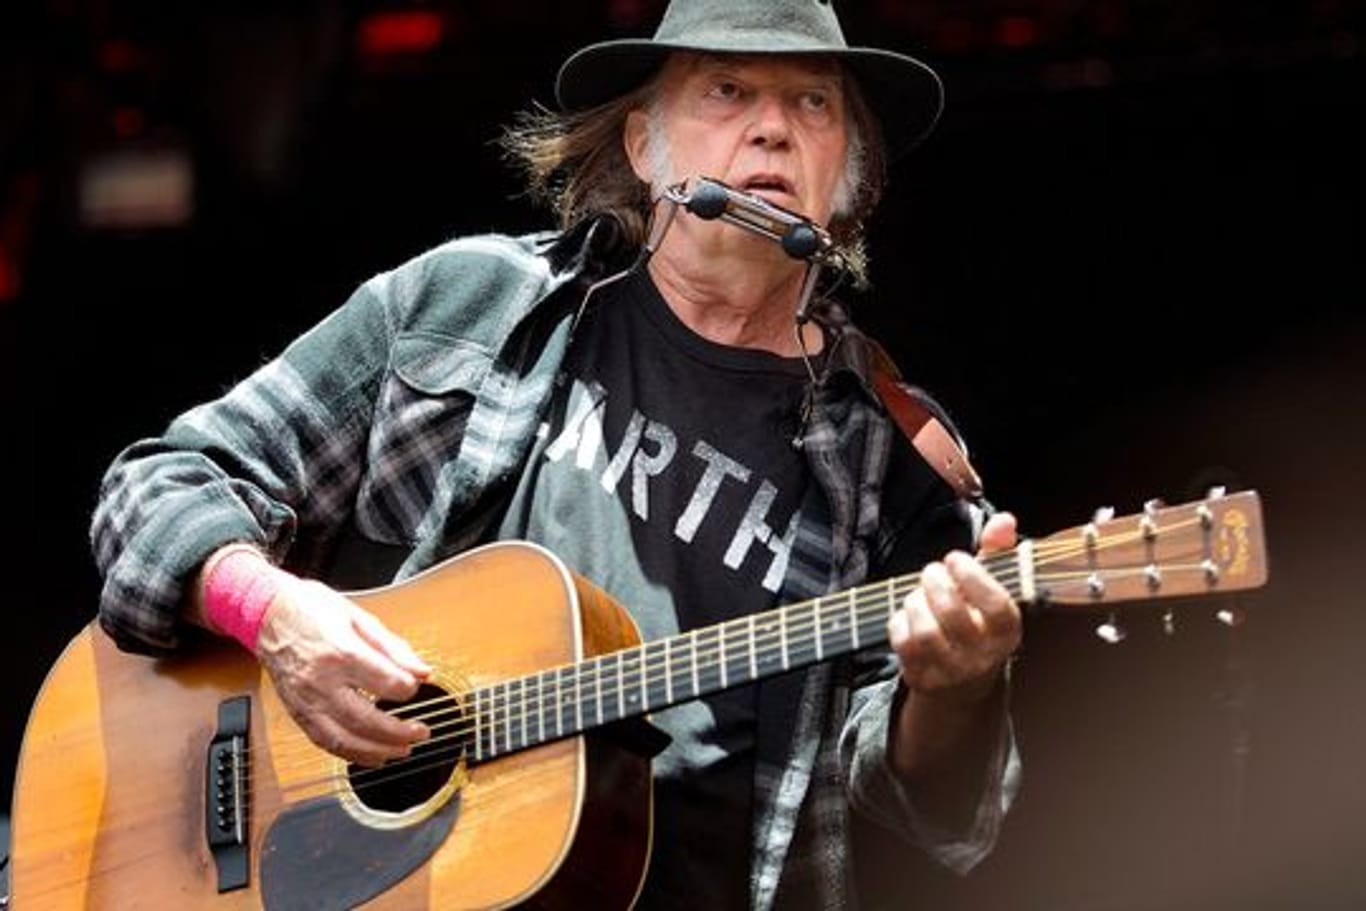 Der kanadische Sänger Neil Young war nur der Erste, der Spotify verlasen hat, jetzt fogten ihm andere Musiker.